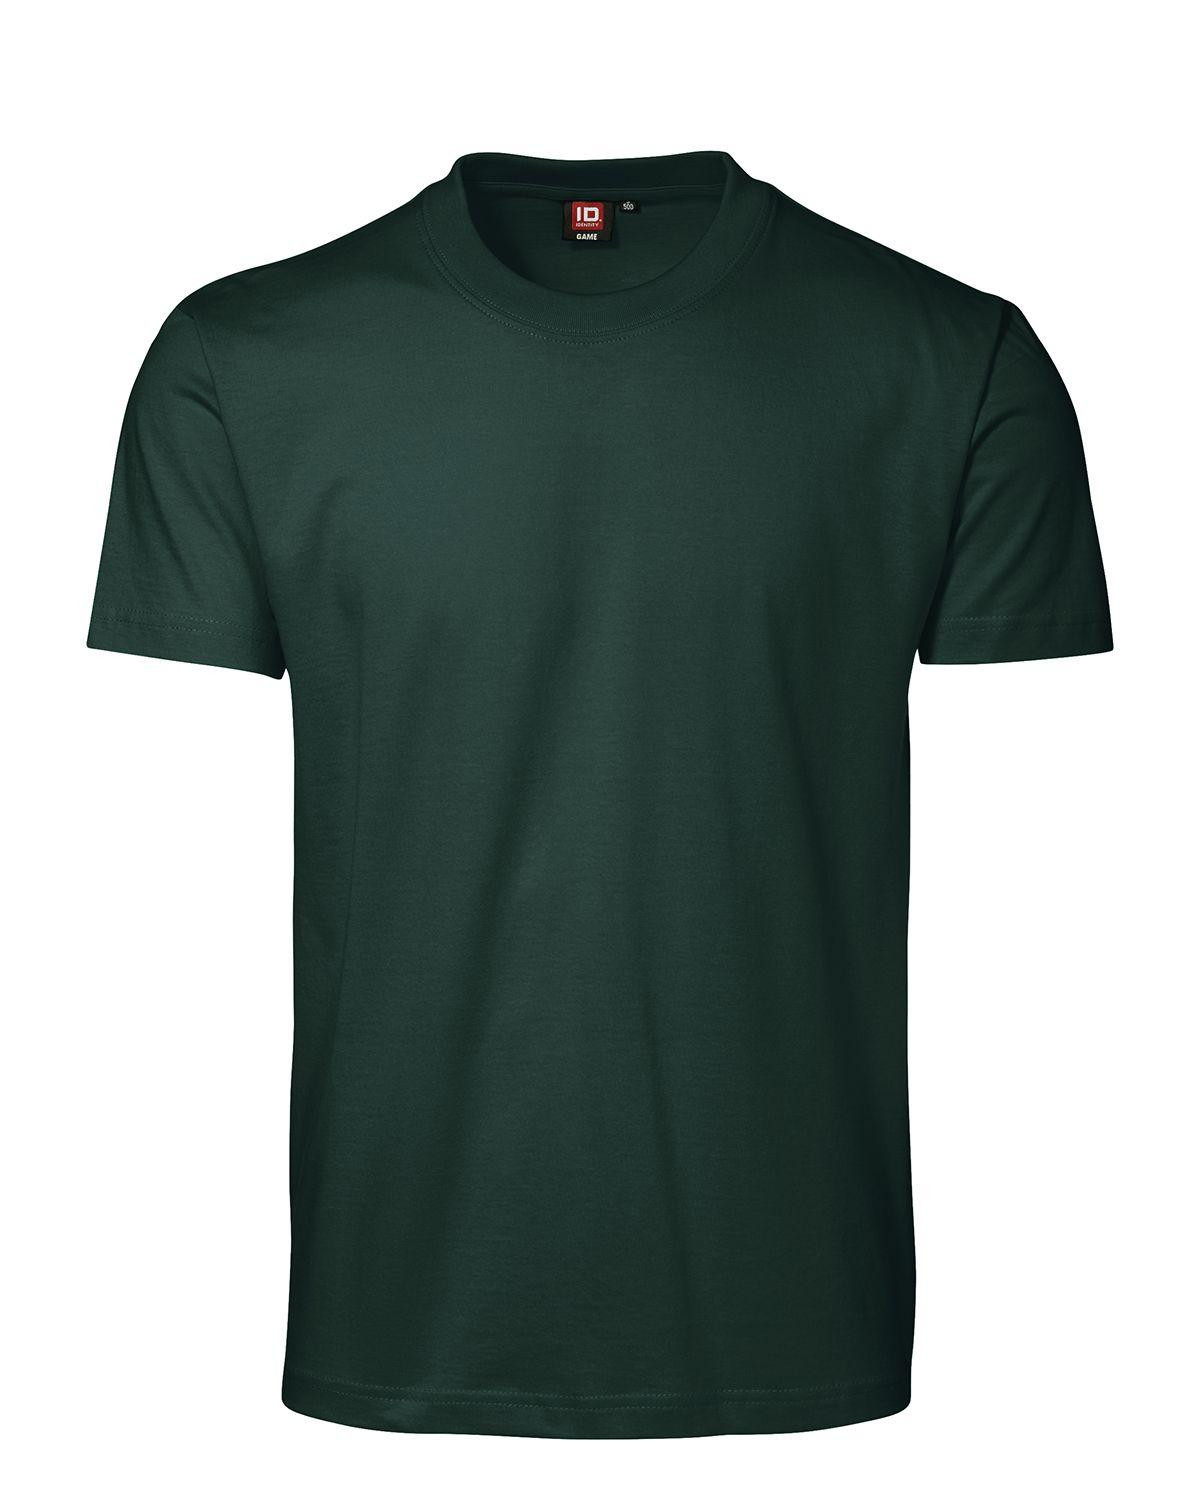 ID GAME T-shirt (Flaskegrøn, XL)